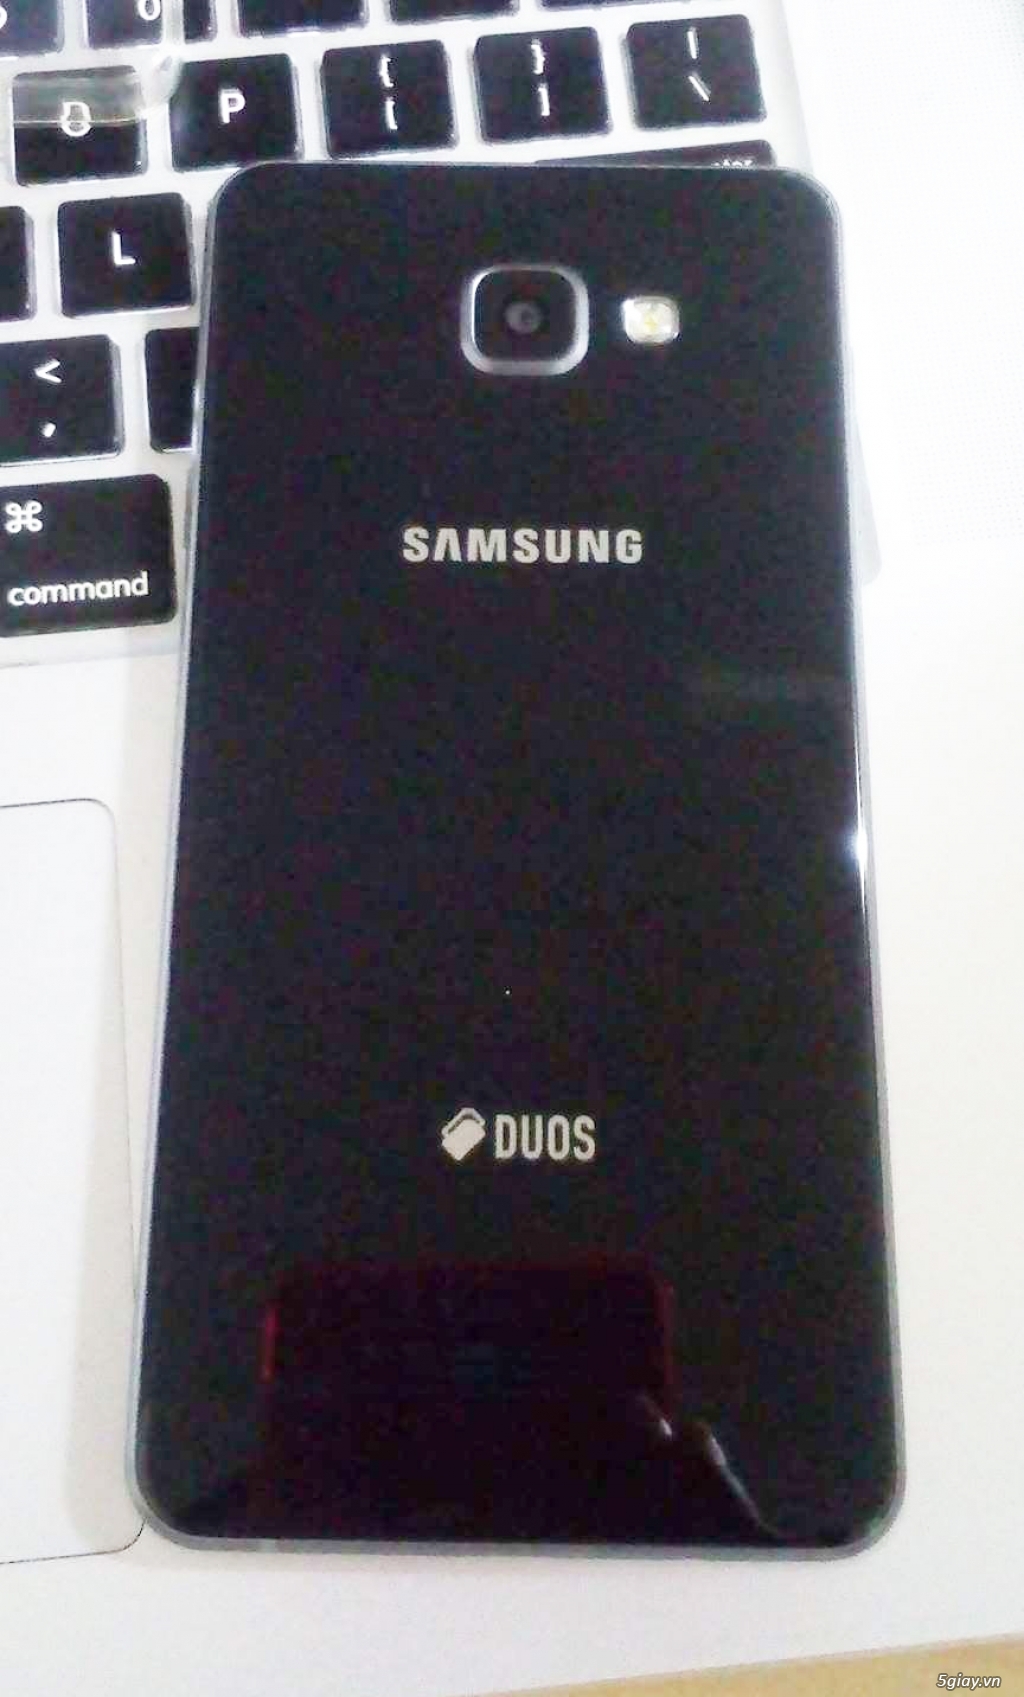 Samsung A7 (2016) like new. BH chính hãng 5 tháng